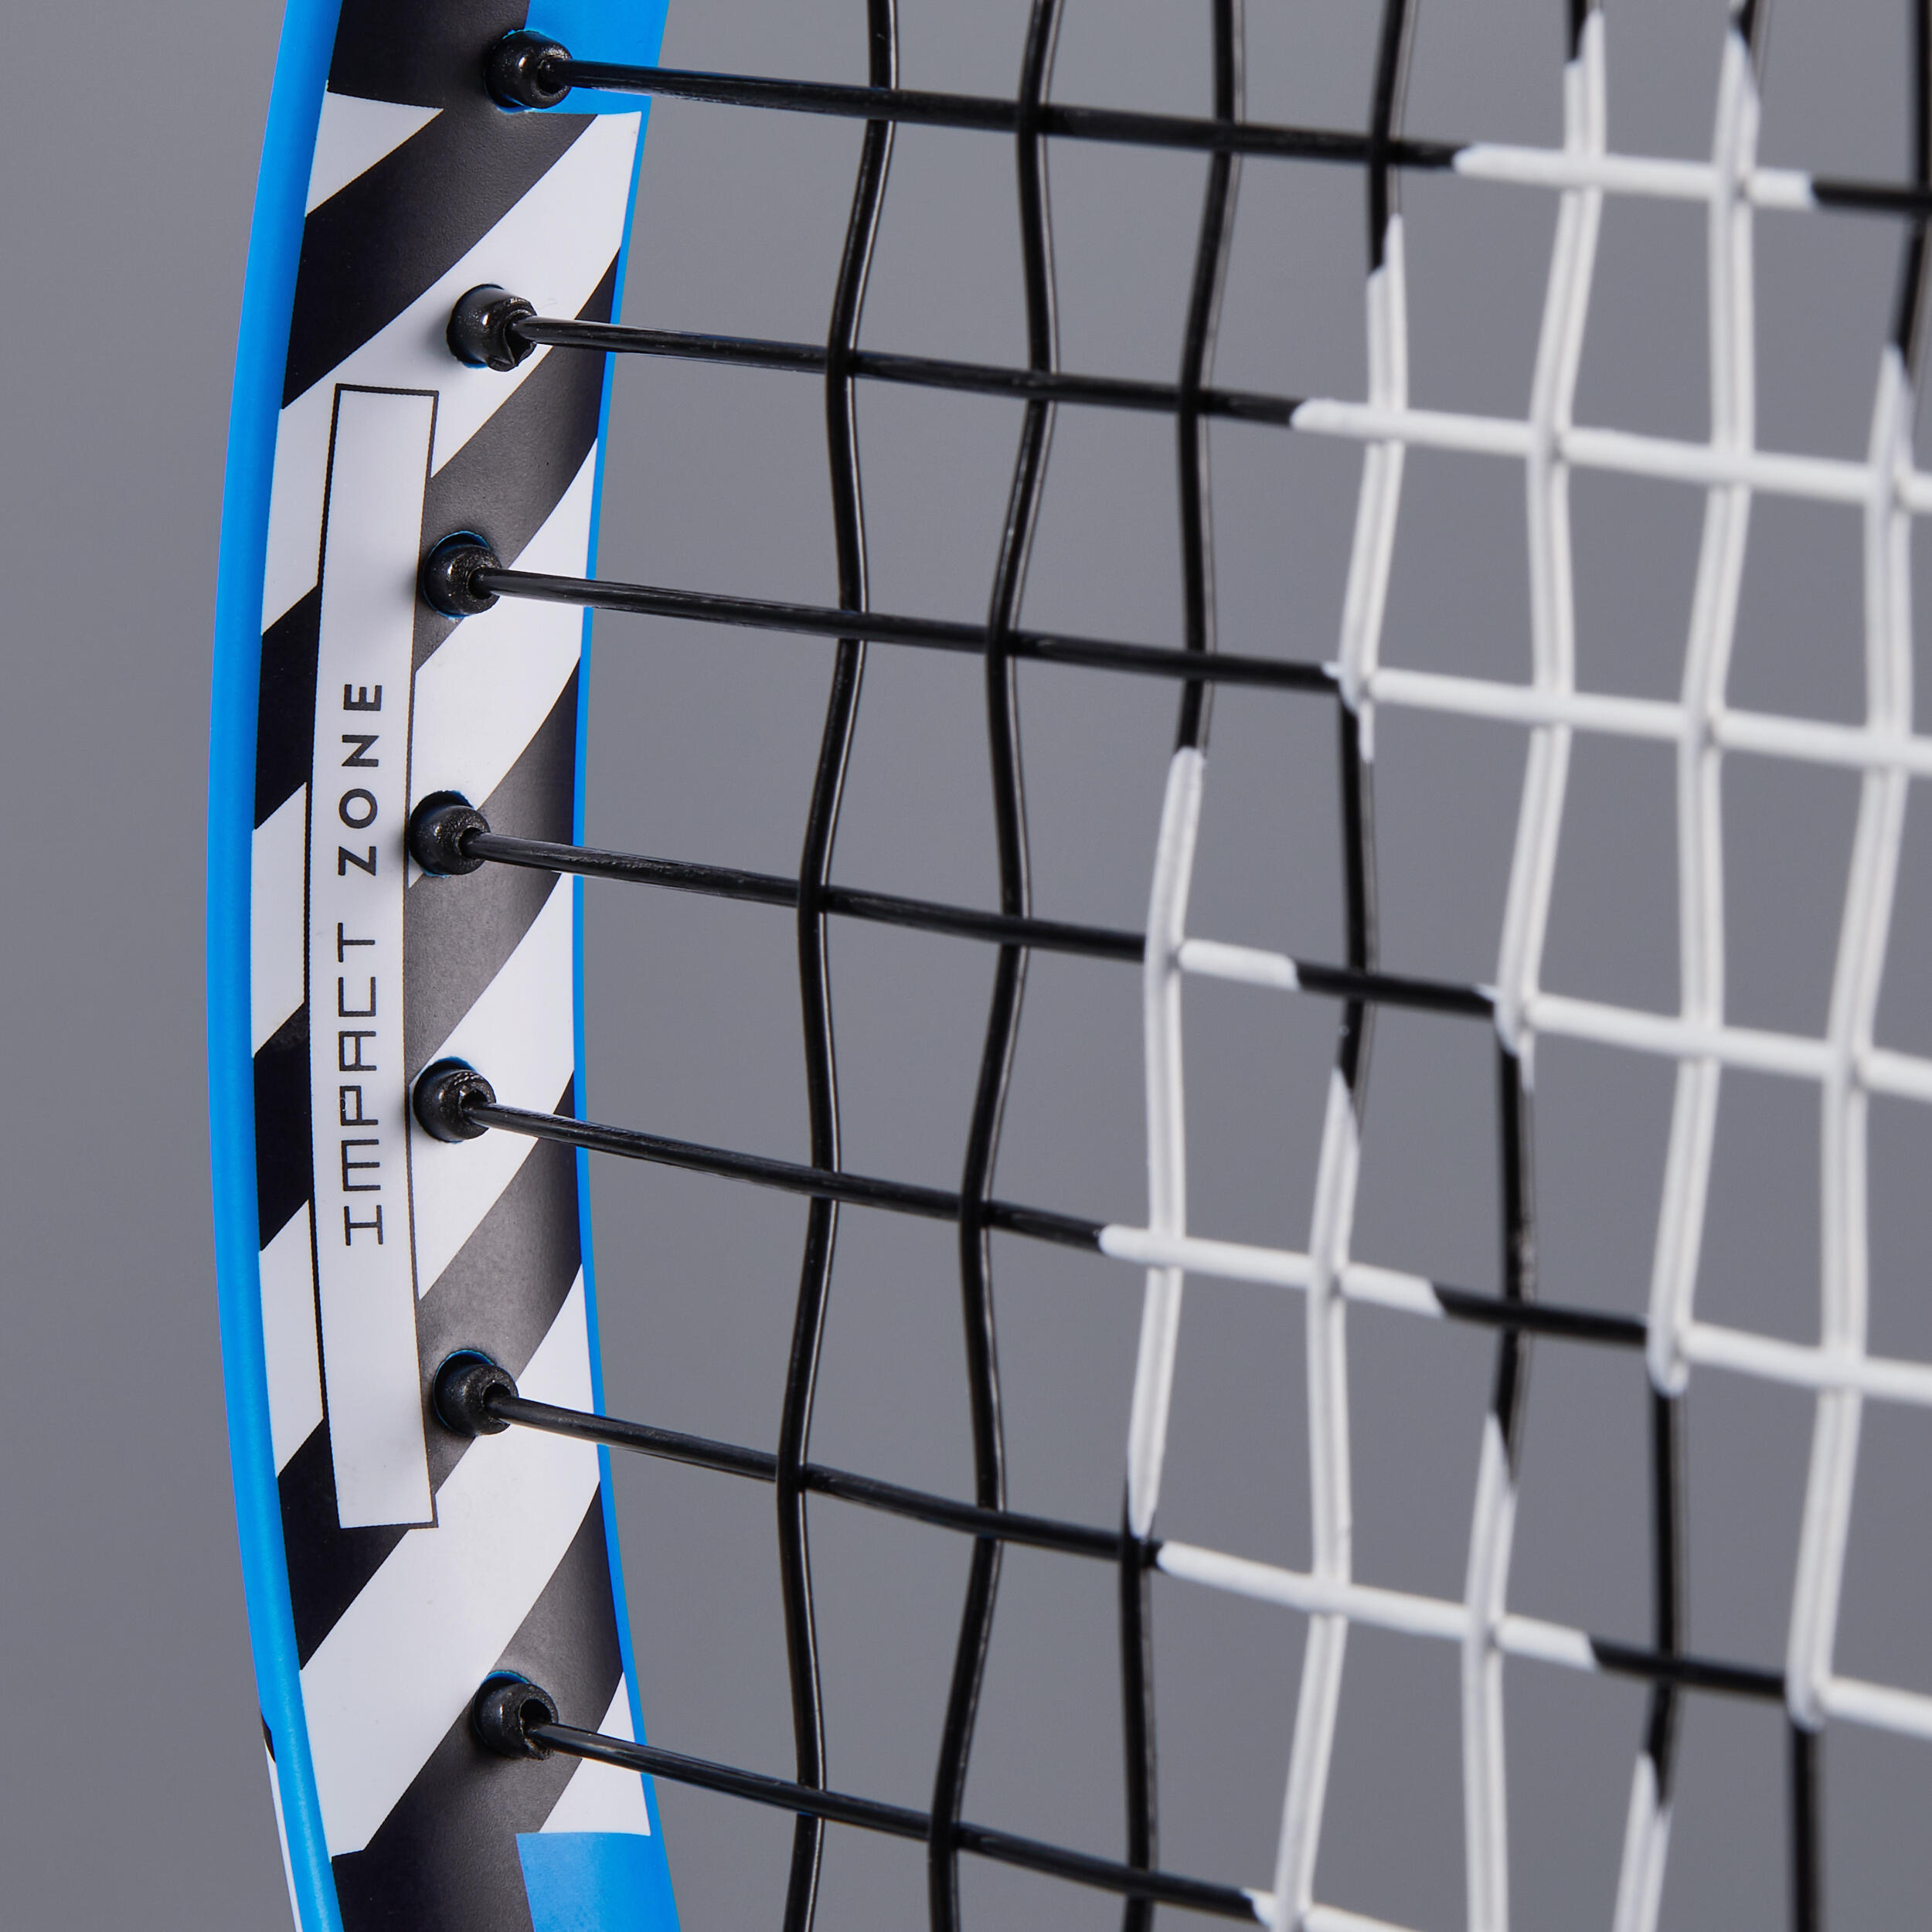 Raquette de tennis 176 g enfant - TR 130 bleu/noir - ARTENGO